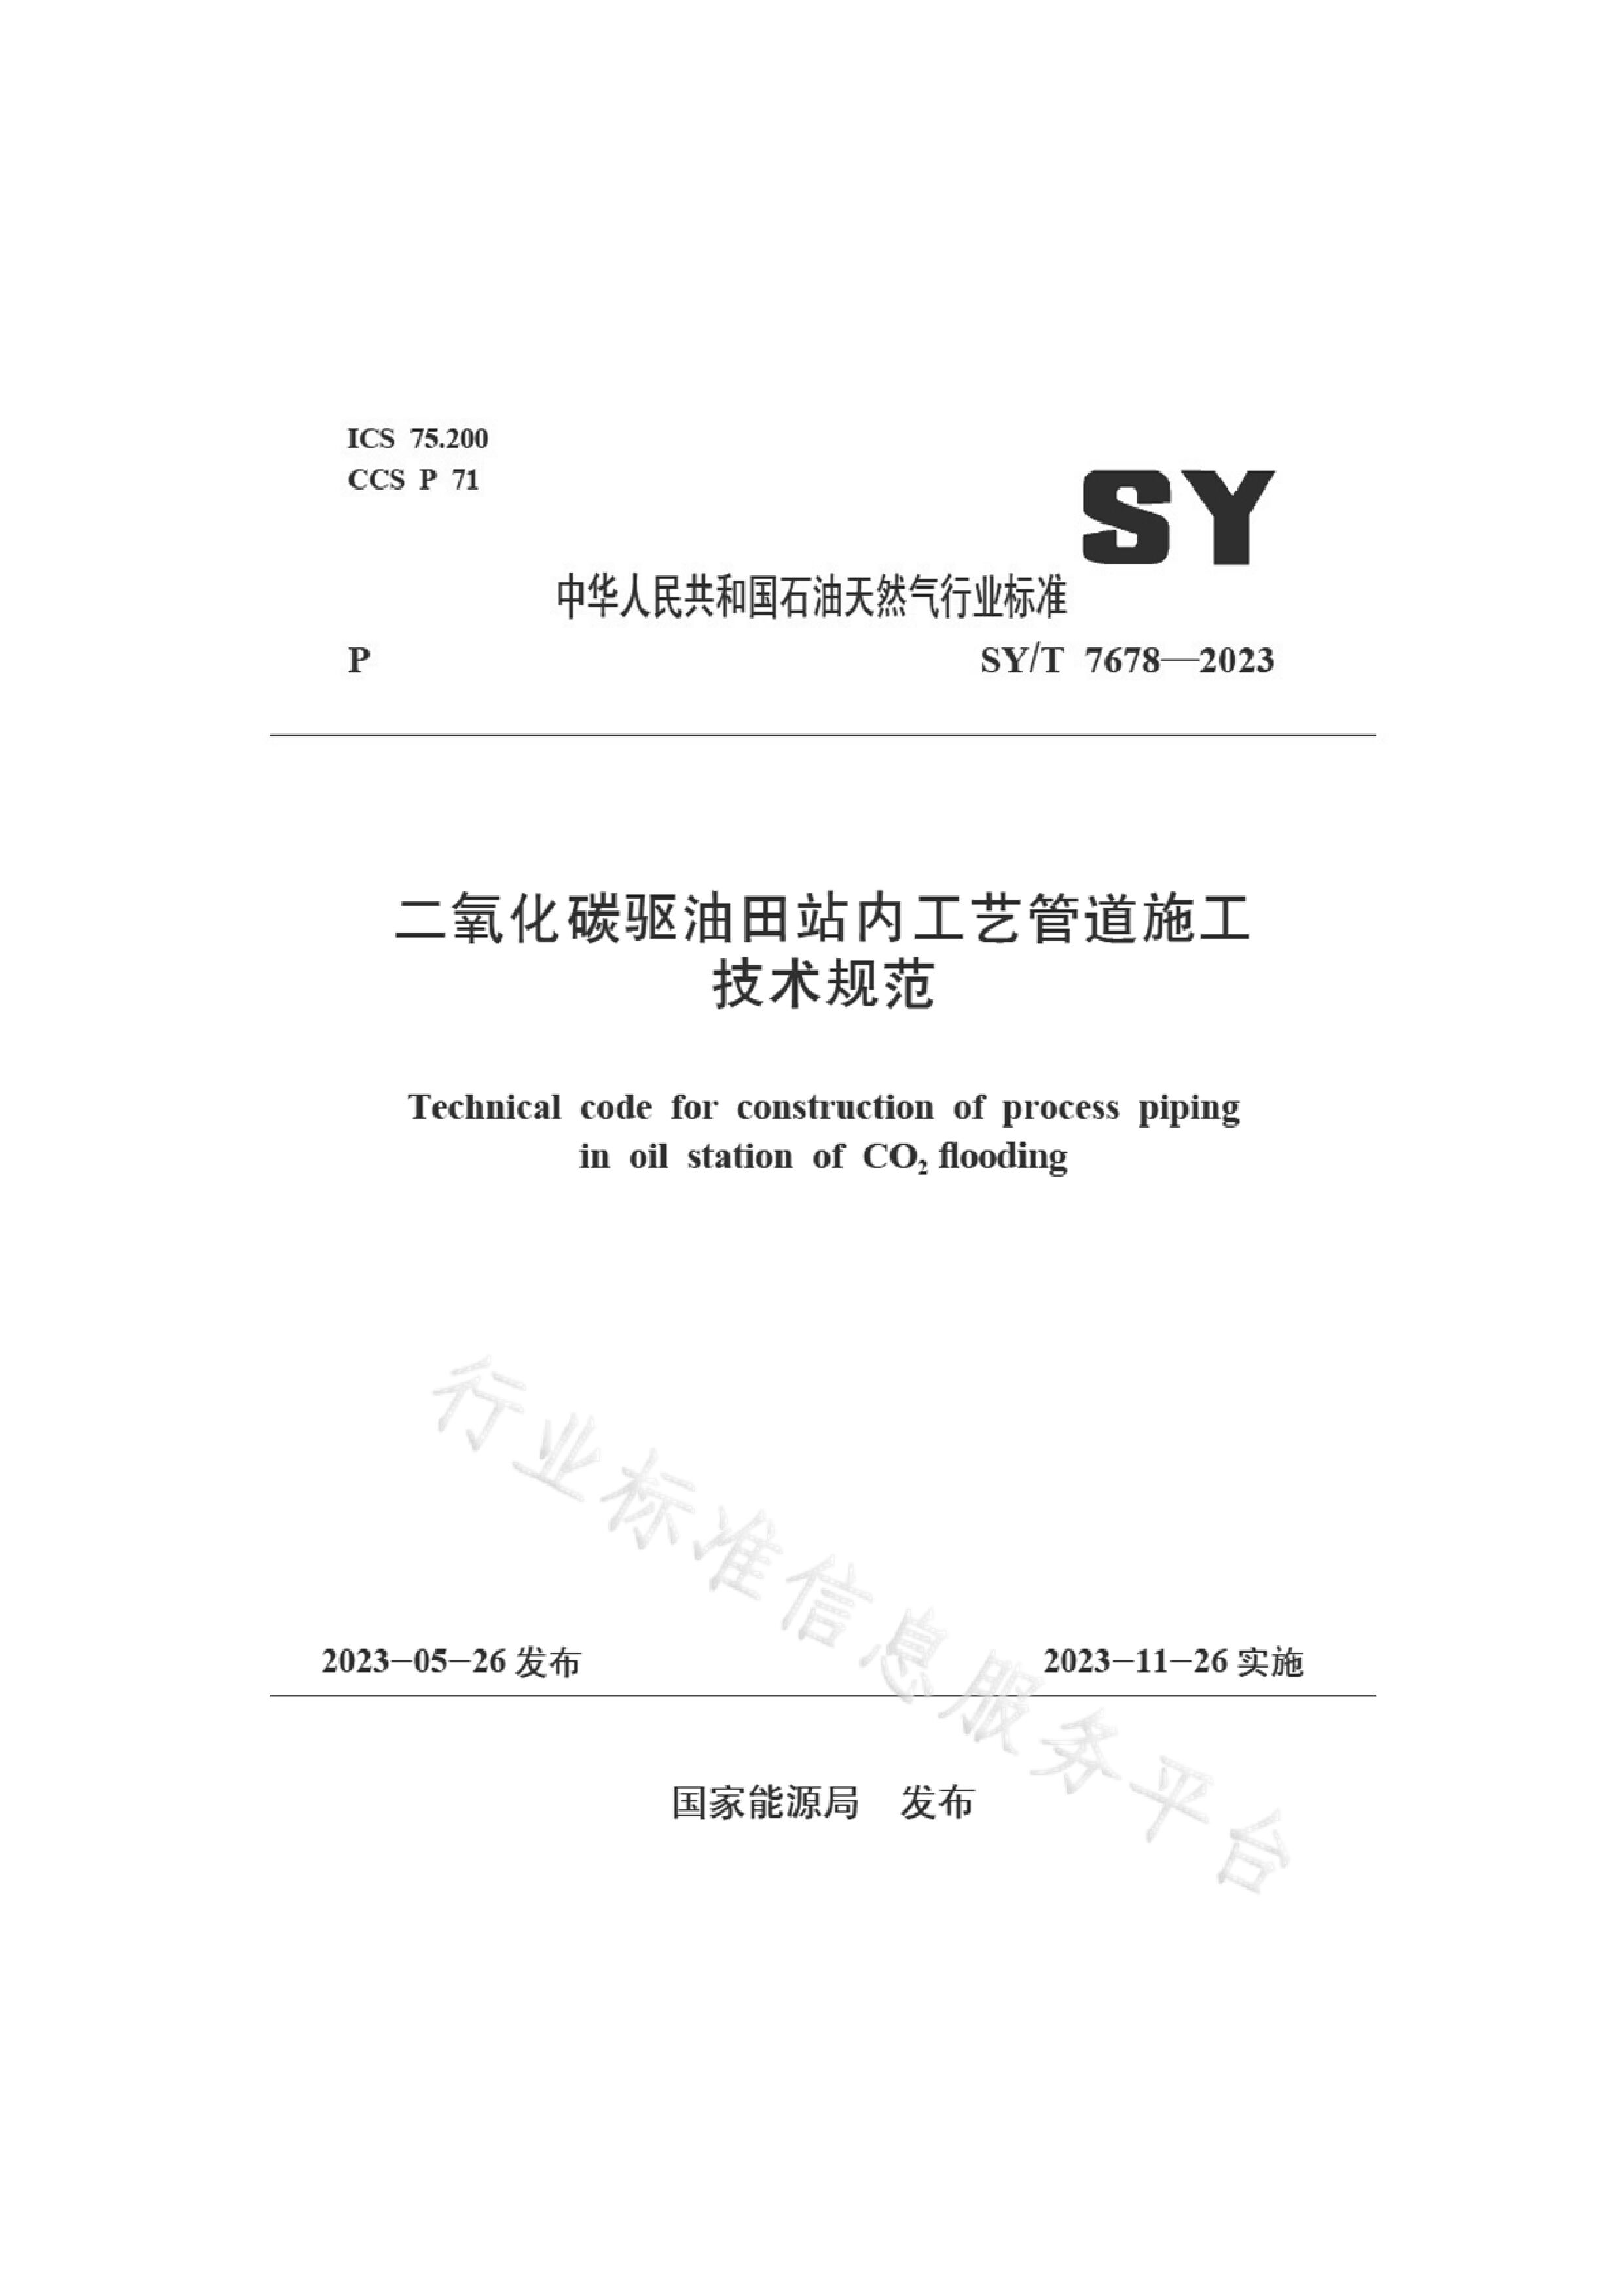 SY/T 7678-2023